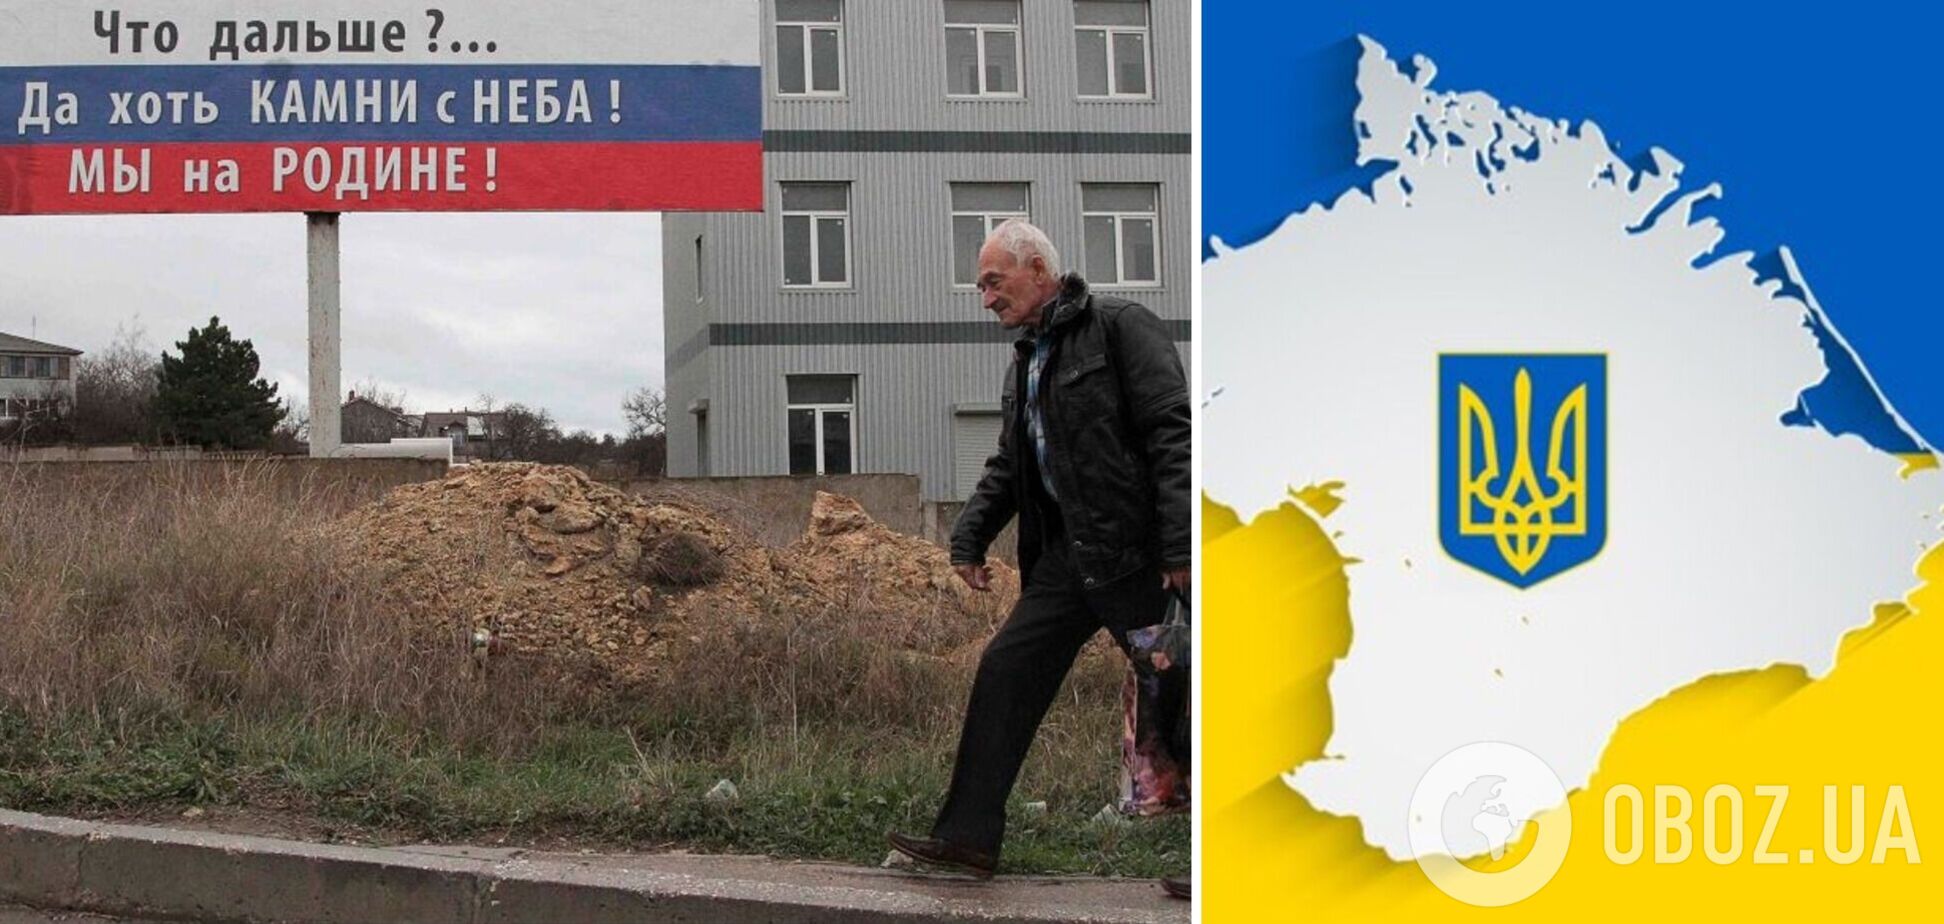 Крым ждет тяжелая зима: удержать полуостров не получится, он вернется в состав Украины